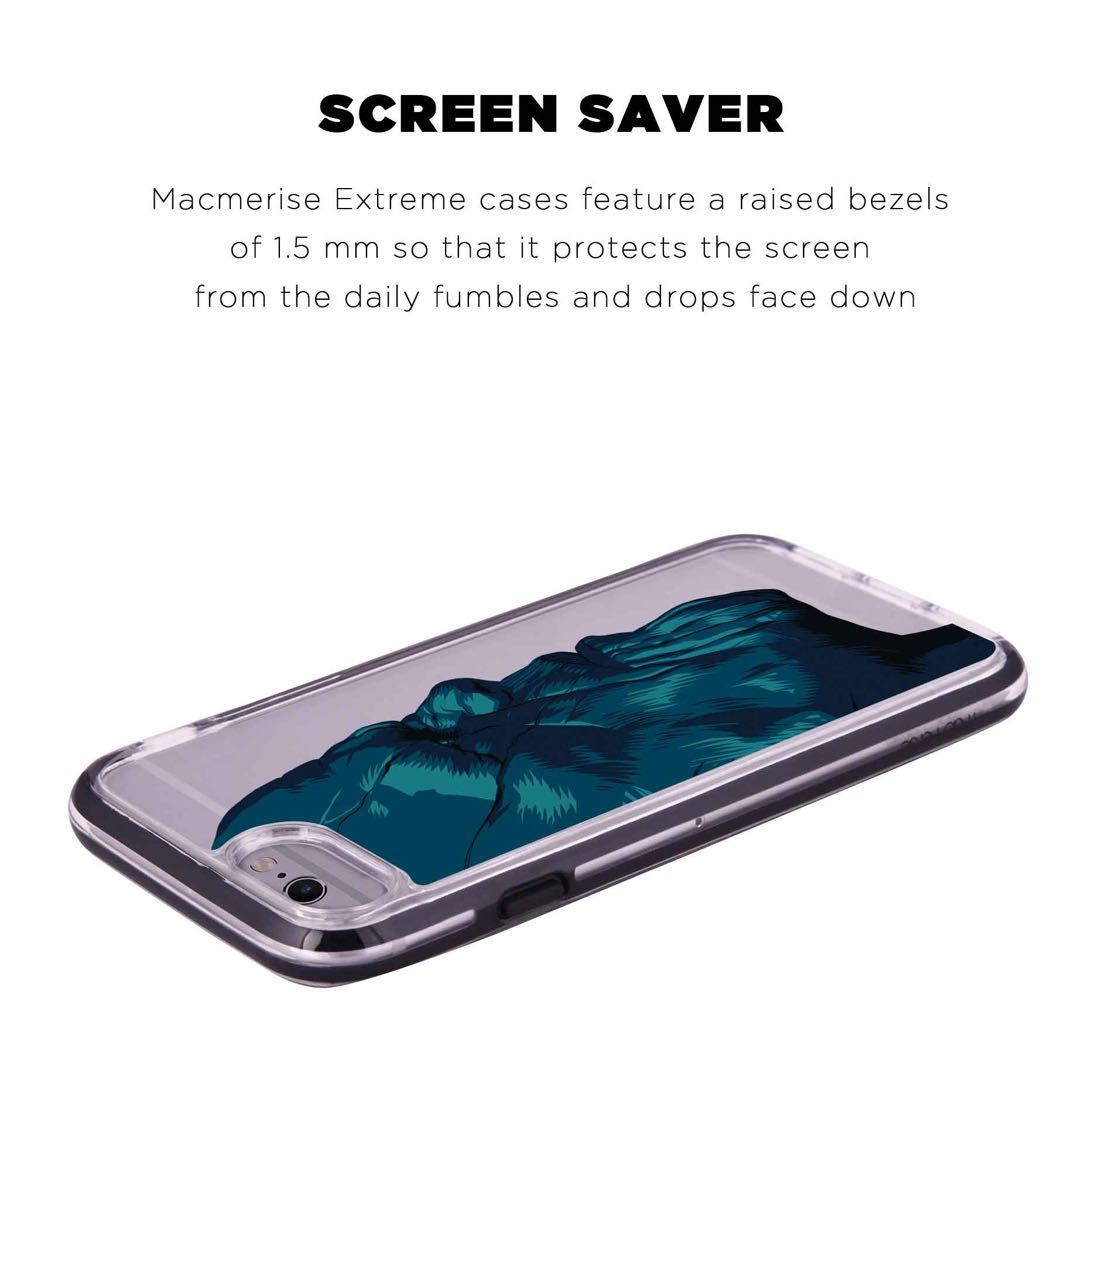 Illuminated Thanos - Extreme Phone Case for iPhone 6 Plus